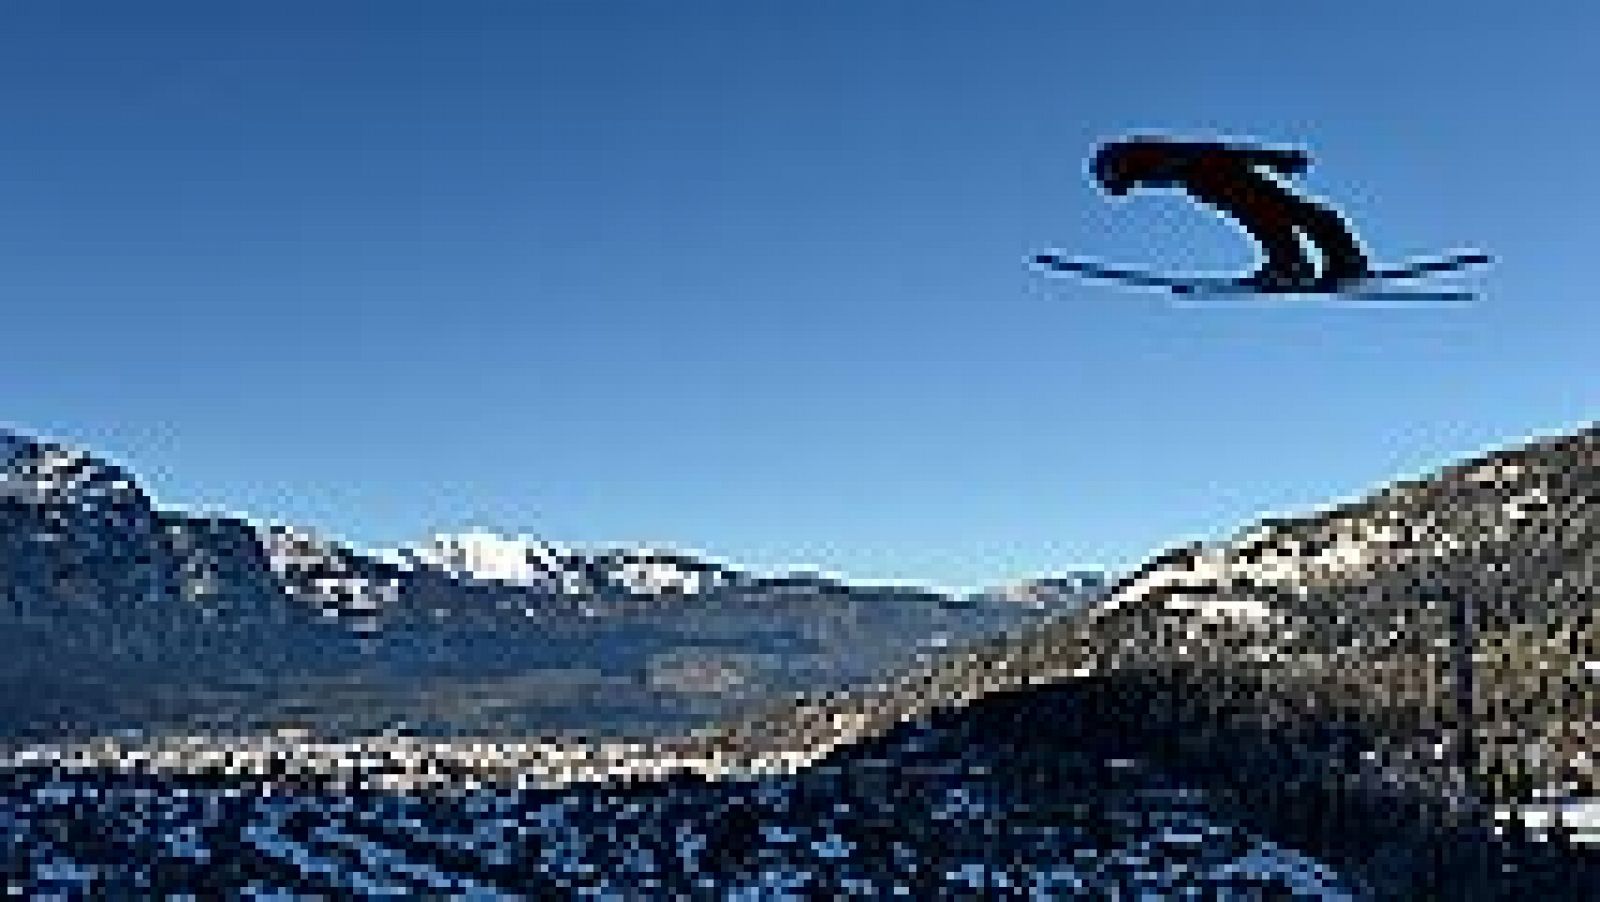 El noruego Anders Jacobsen ha repetido el triunfo de Año Nuevo que logró en 2013 en Garmisch-Partenkirchen (Alemania), al ganar la segunda prueba del Cuatro Trampolines de saltos de esquí, torneo en el que el austriaco Stefan Kraft sigue líder y el e